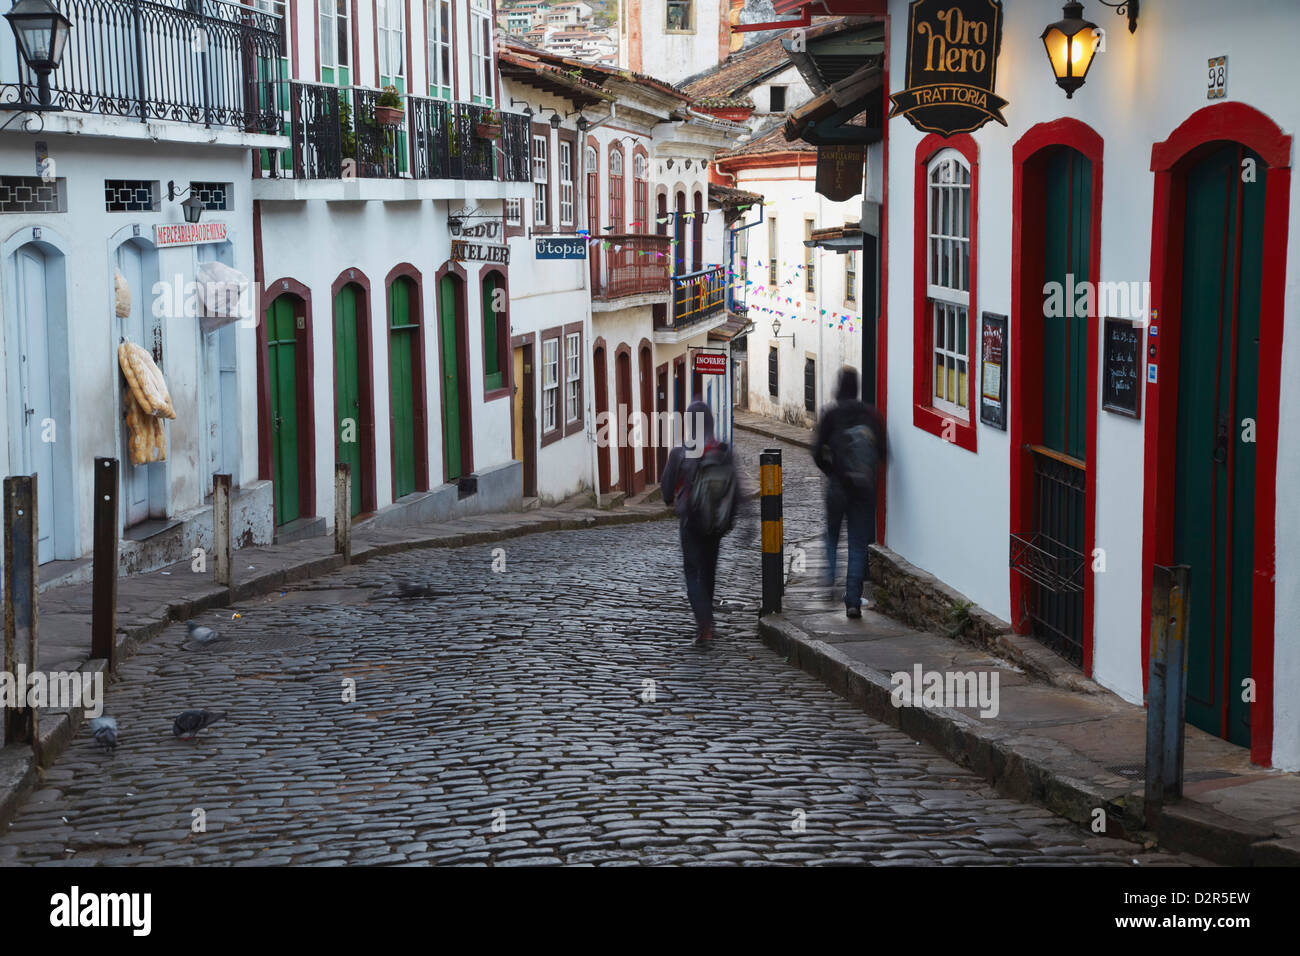 Promeneurs sur rue, Ouro Preto, UNESCO World Heritage Site, Minas Gerais, Brésil, Amérique du Sud Banque D'Images